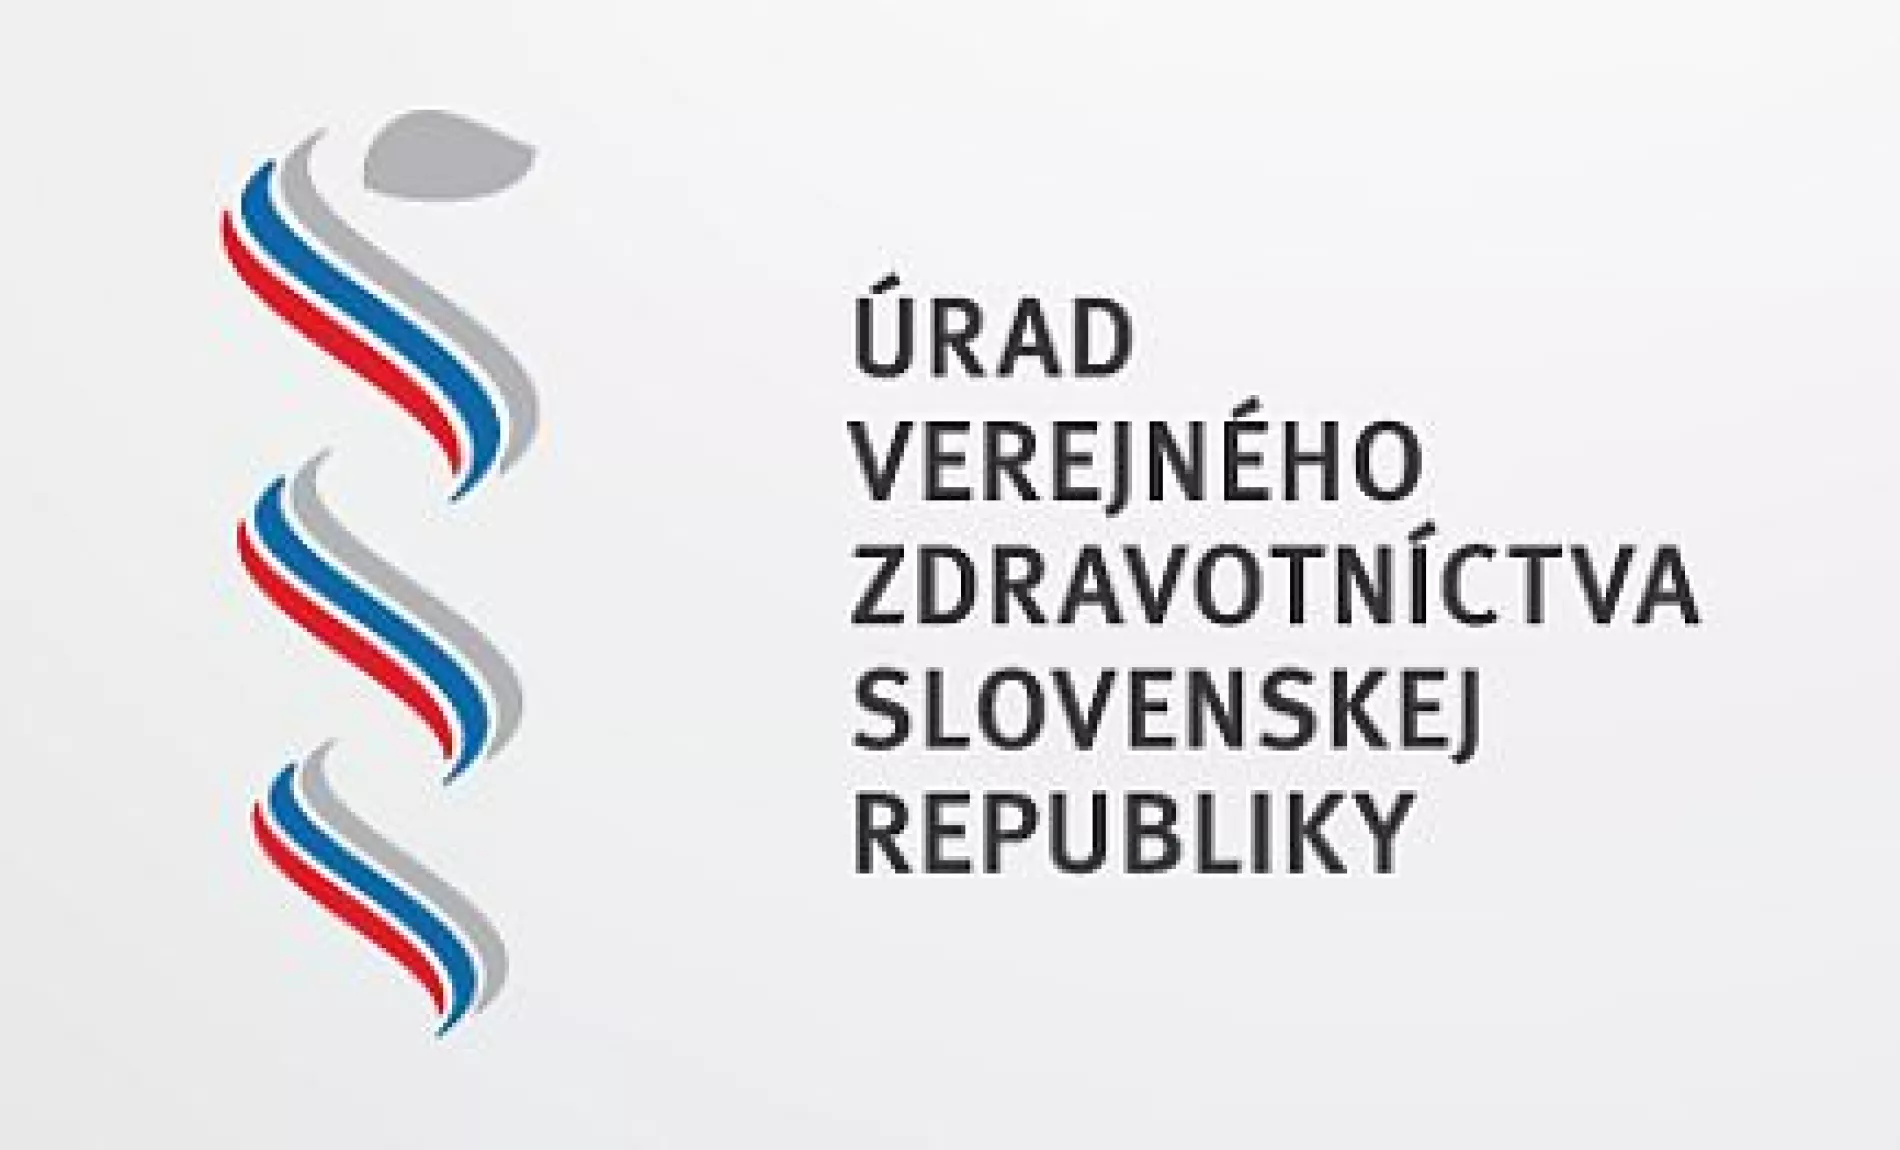 Úrad verejného zdravotníctva Slovenskej republiky: ZASADAL KRÍZOVÝ ŠTÁB, OPATRENIA SA SPRÍSNIA